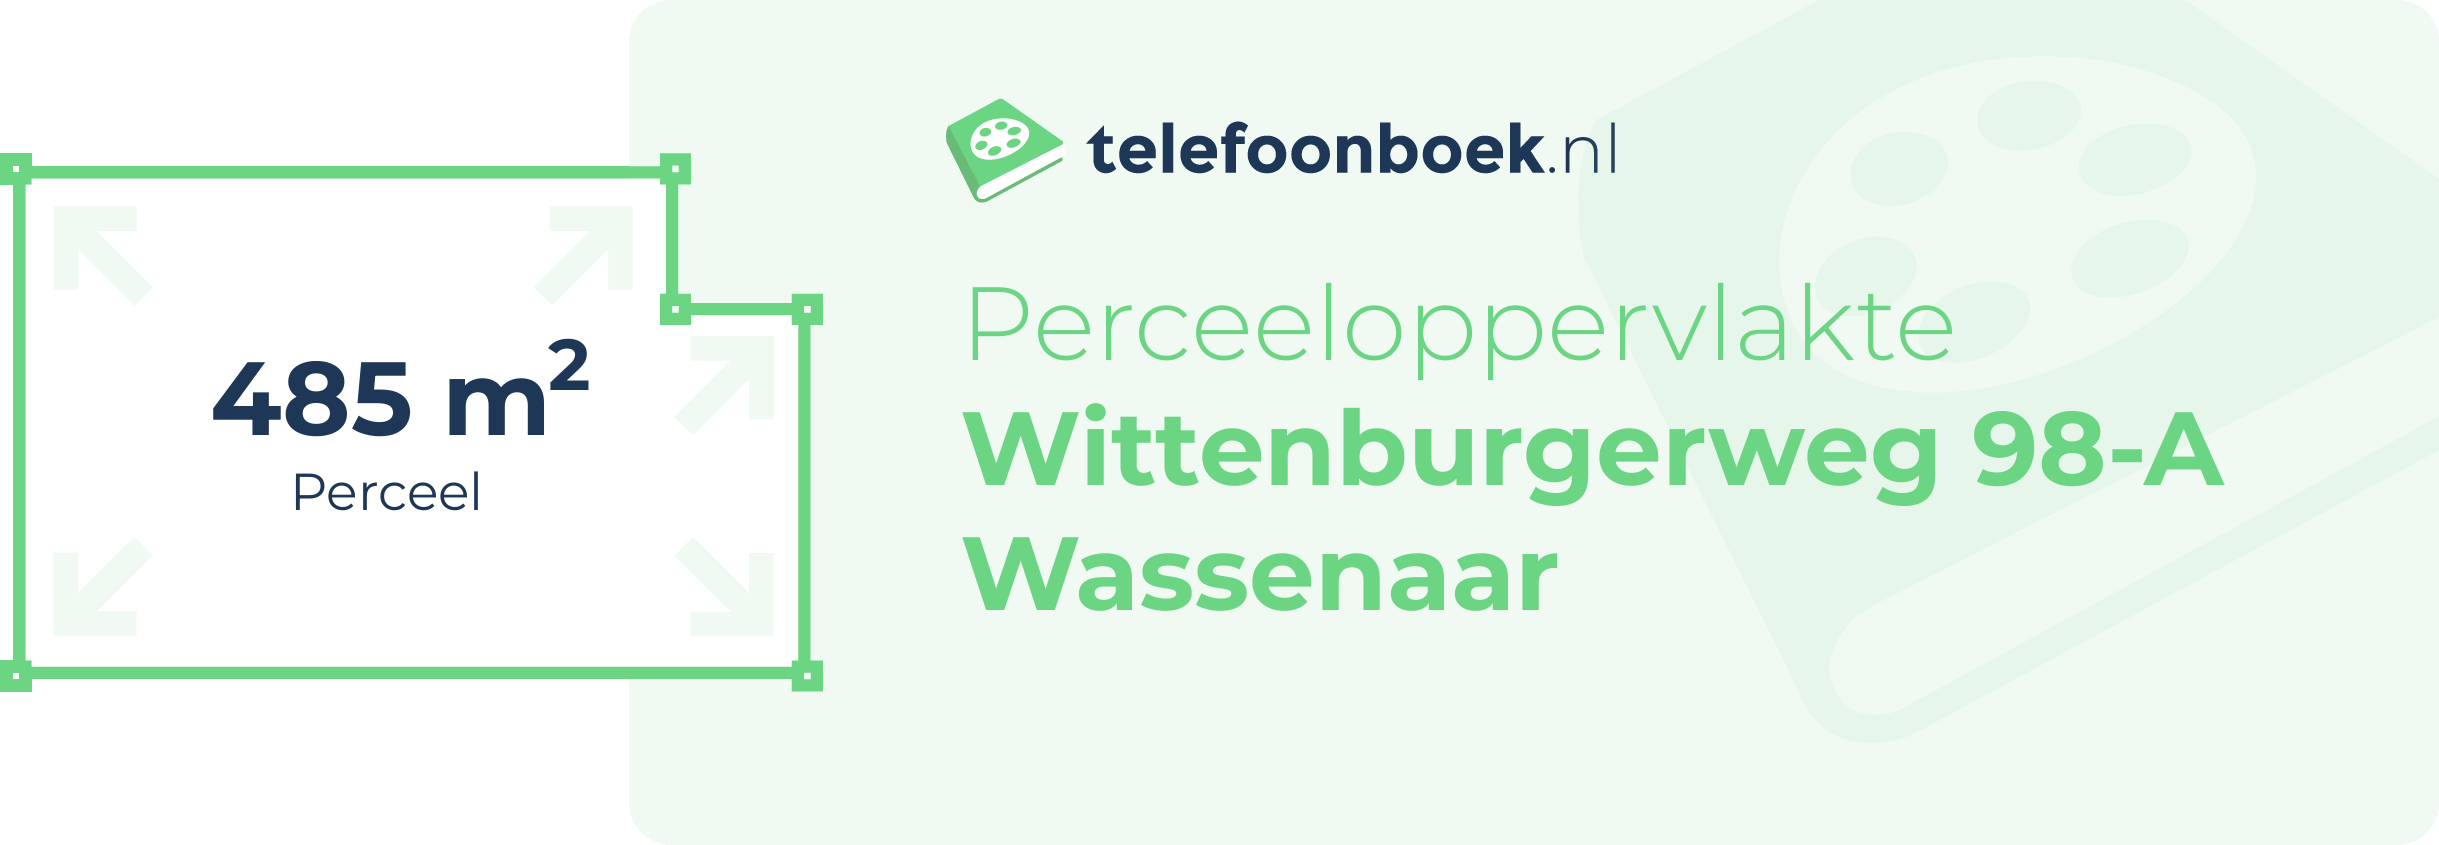 Perceeloppervlakte Wittenburgerweg 98-A Wassenaar